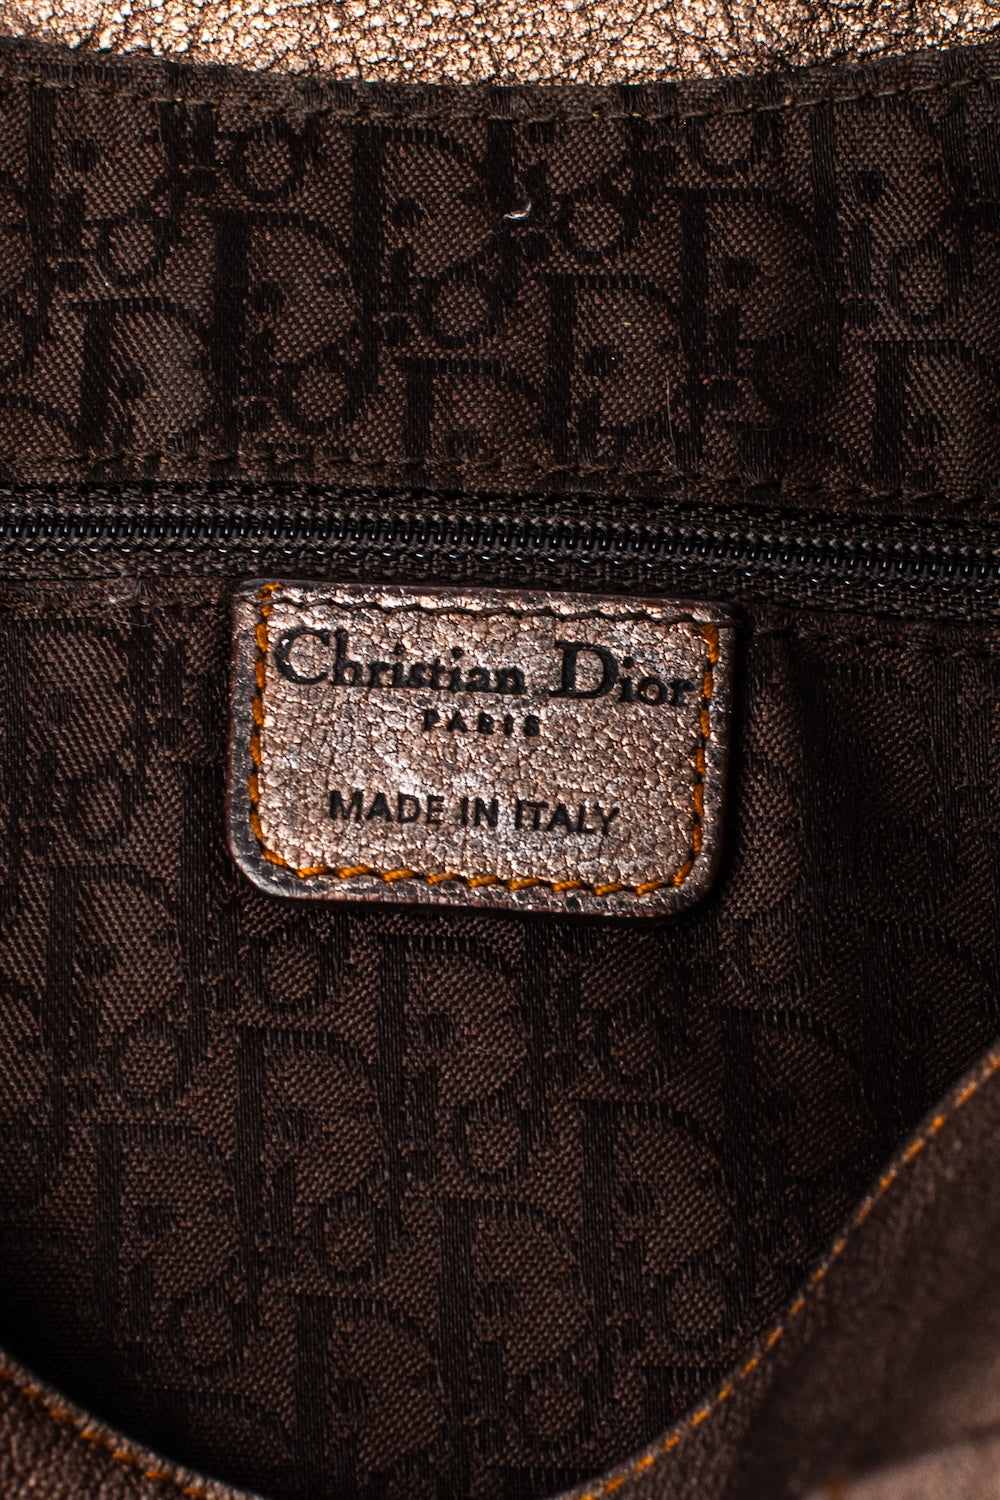 Christian Dior <br> F/W 2006 John Galliano runway & campaign Gaucho saddle bag